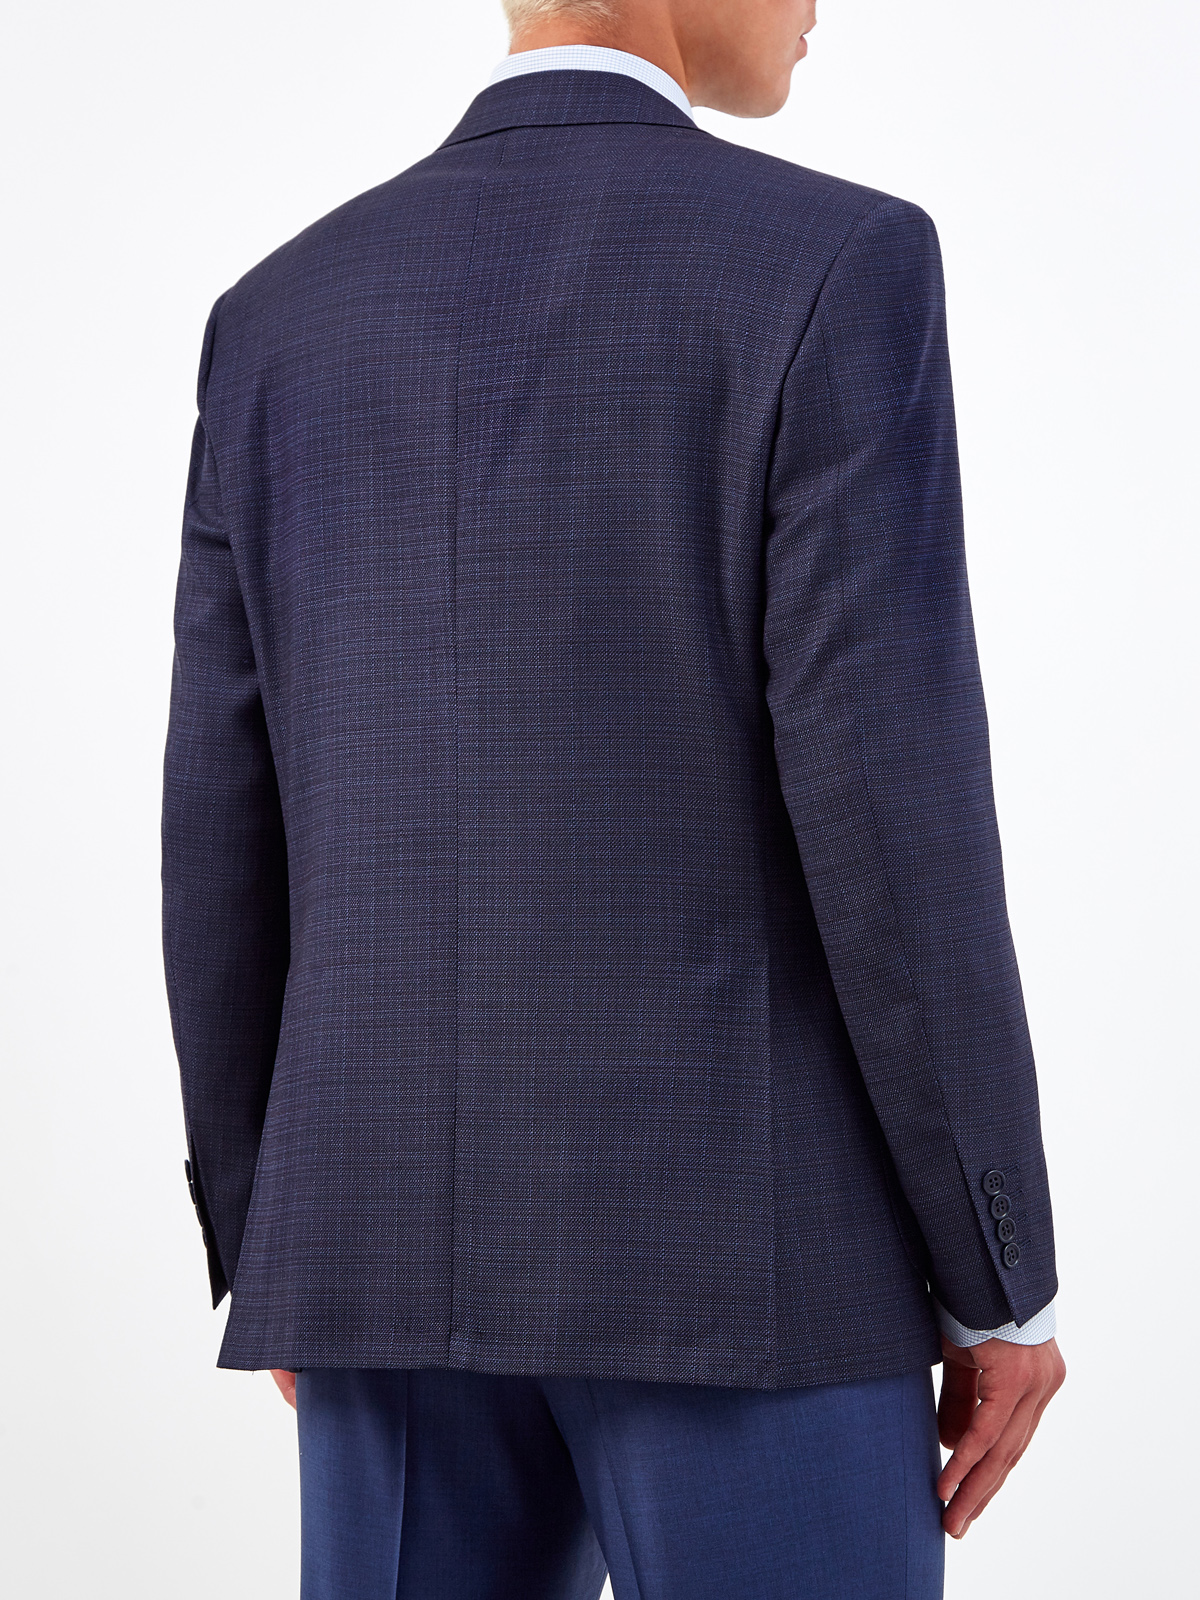 Однобортный пиджак из эластичной шерсти в тонкую клетку CANALI, цвет синий, размер 50;52;54;56 - фото 4